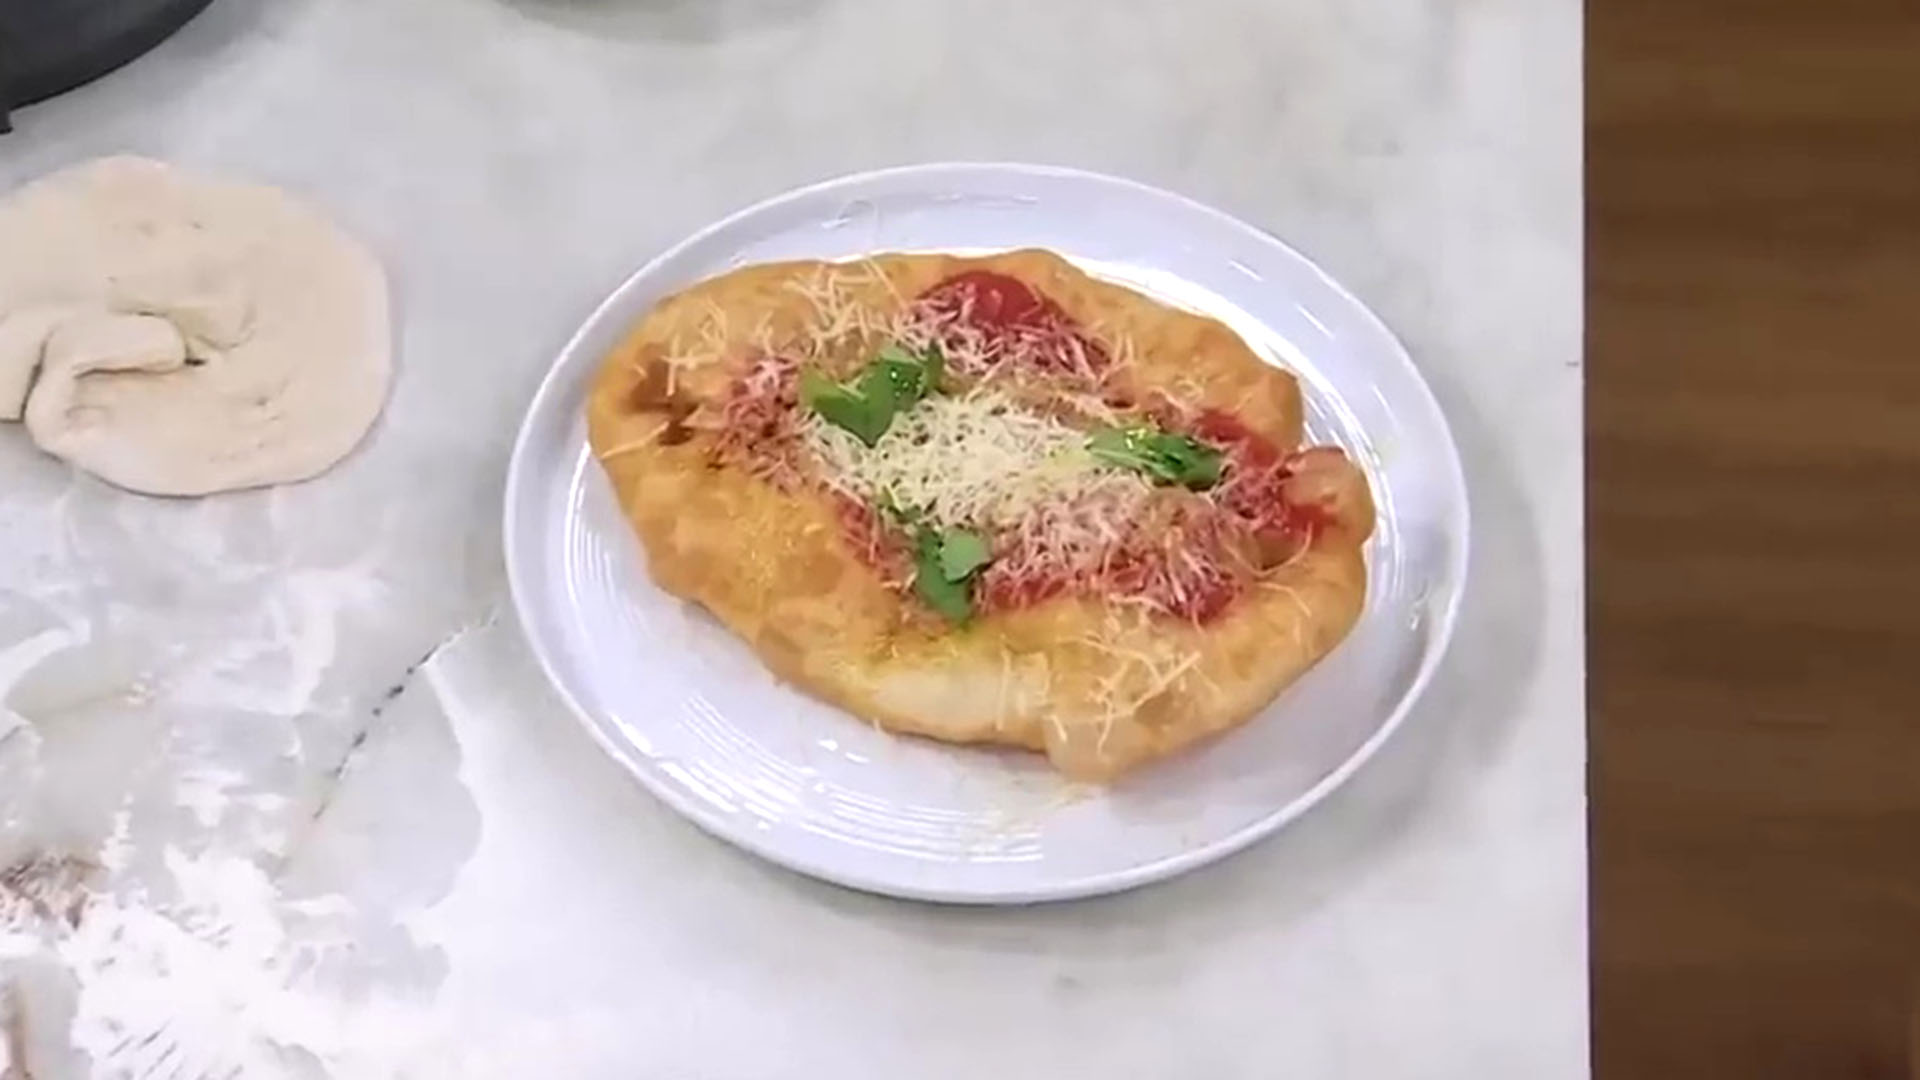 Cuál es la receta de pizza frita de Donato de Santis con la que sorprendió  en Masterchef - Infobae